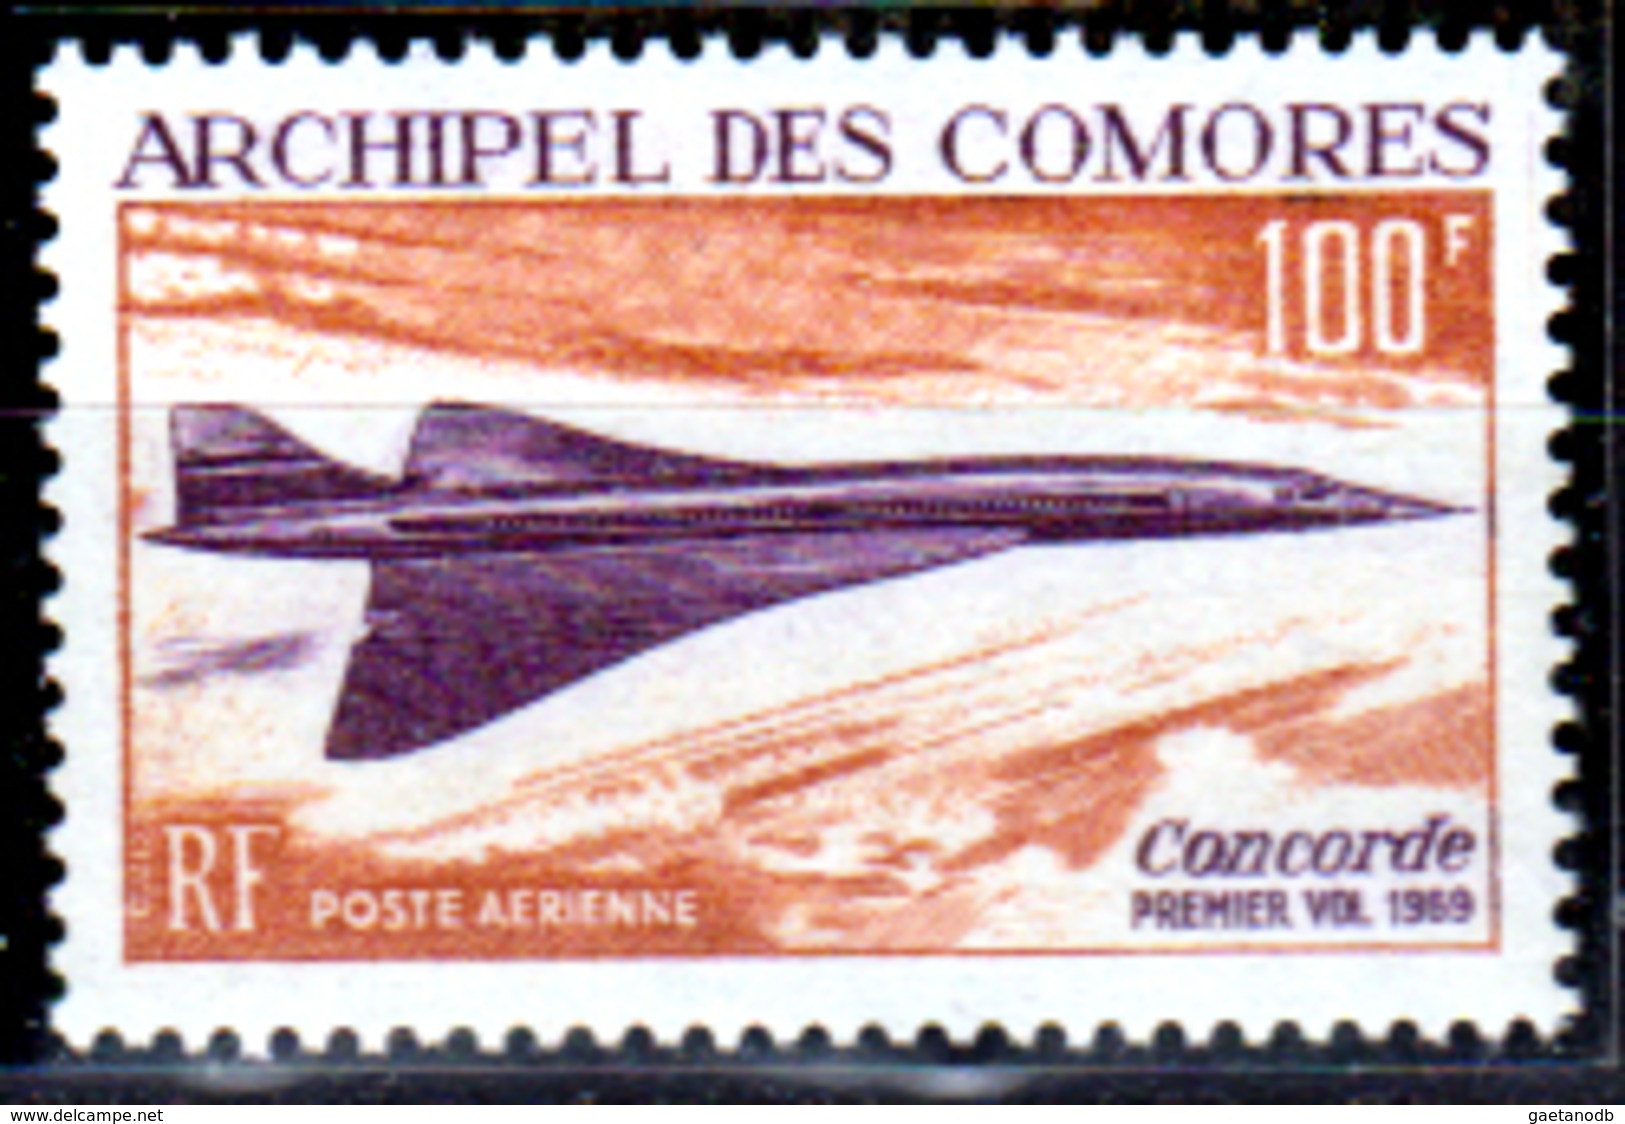 Comore-0014 - Valori Di Posta Aerea 1969 (++) MNH - Senza Difetti Occulti. - Nuovi